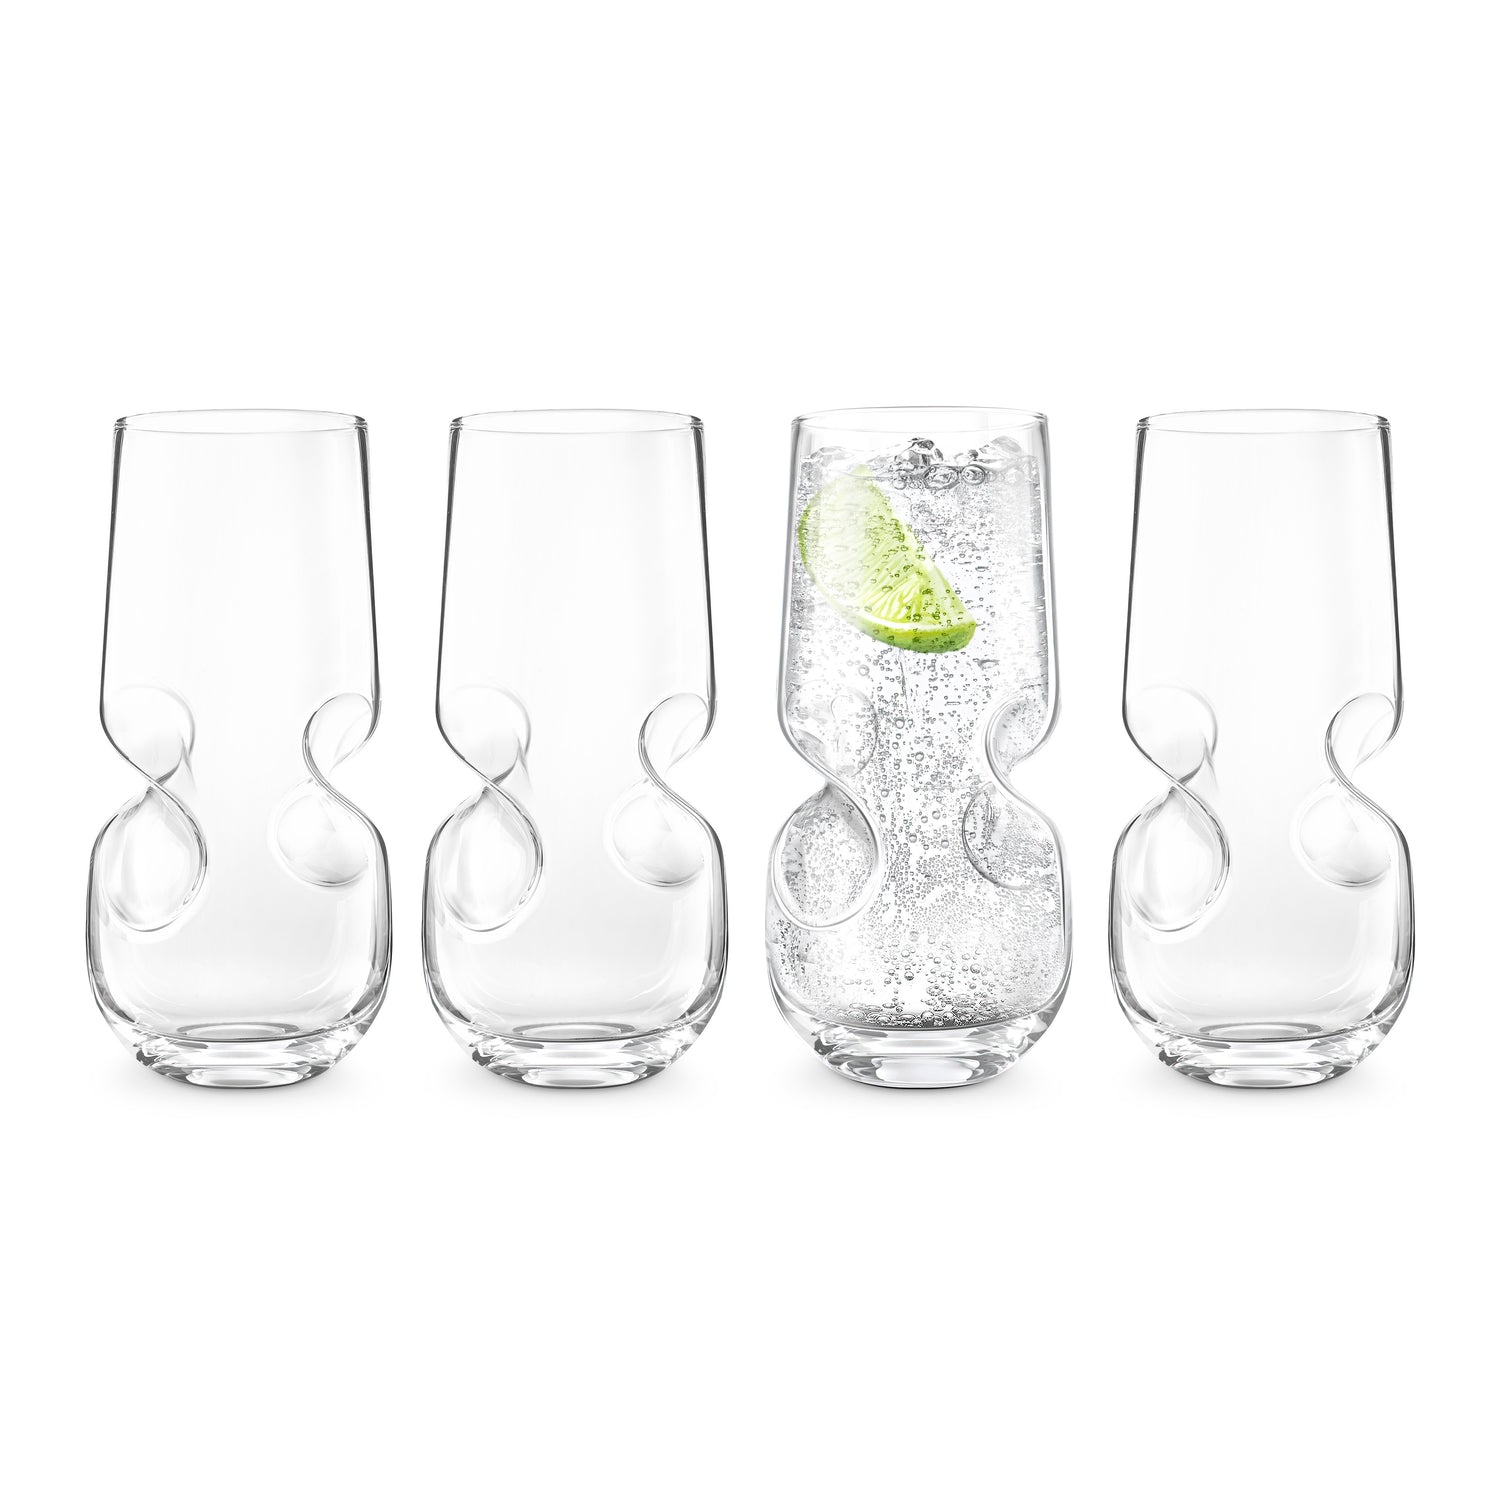 Bubbles Seltzer / Bubbly Beverage Glasses - Set of 4 - 17 oz (500 ml)